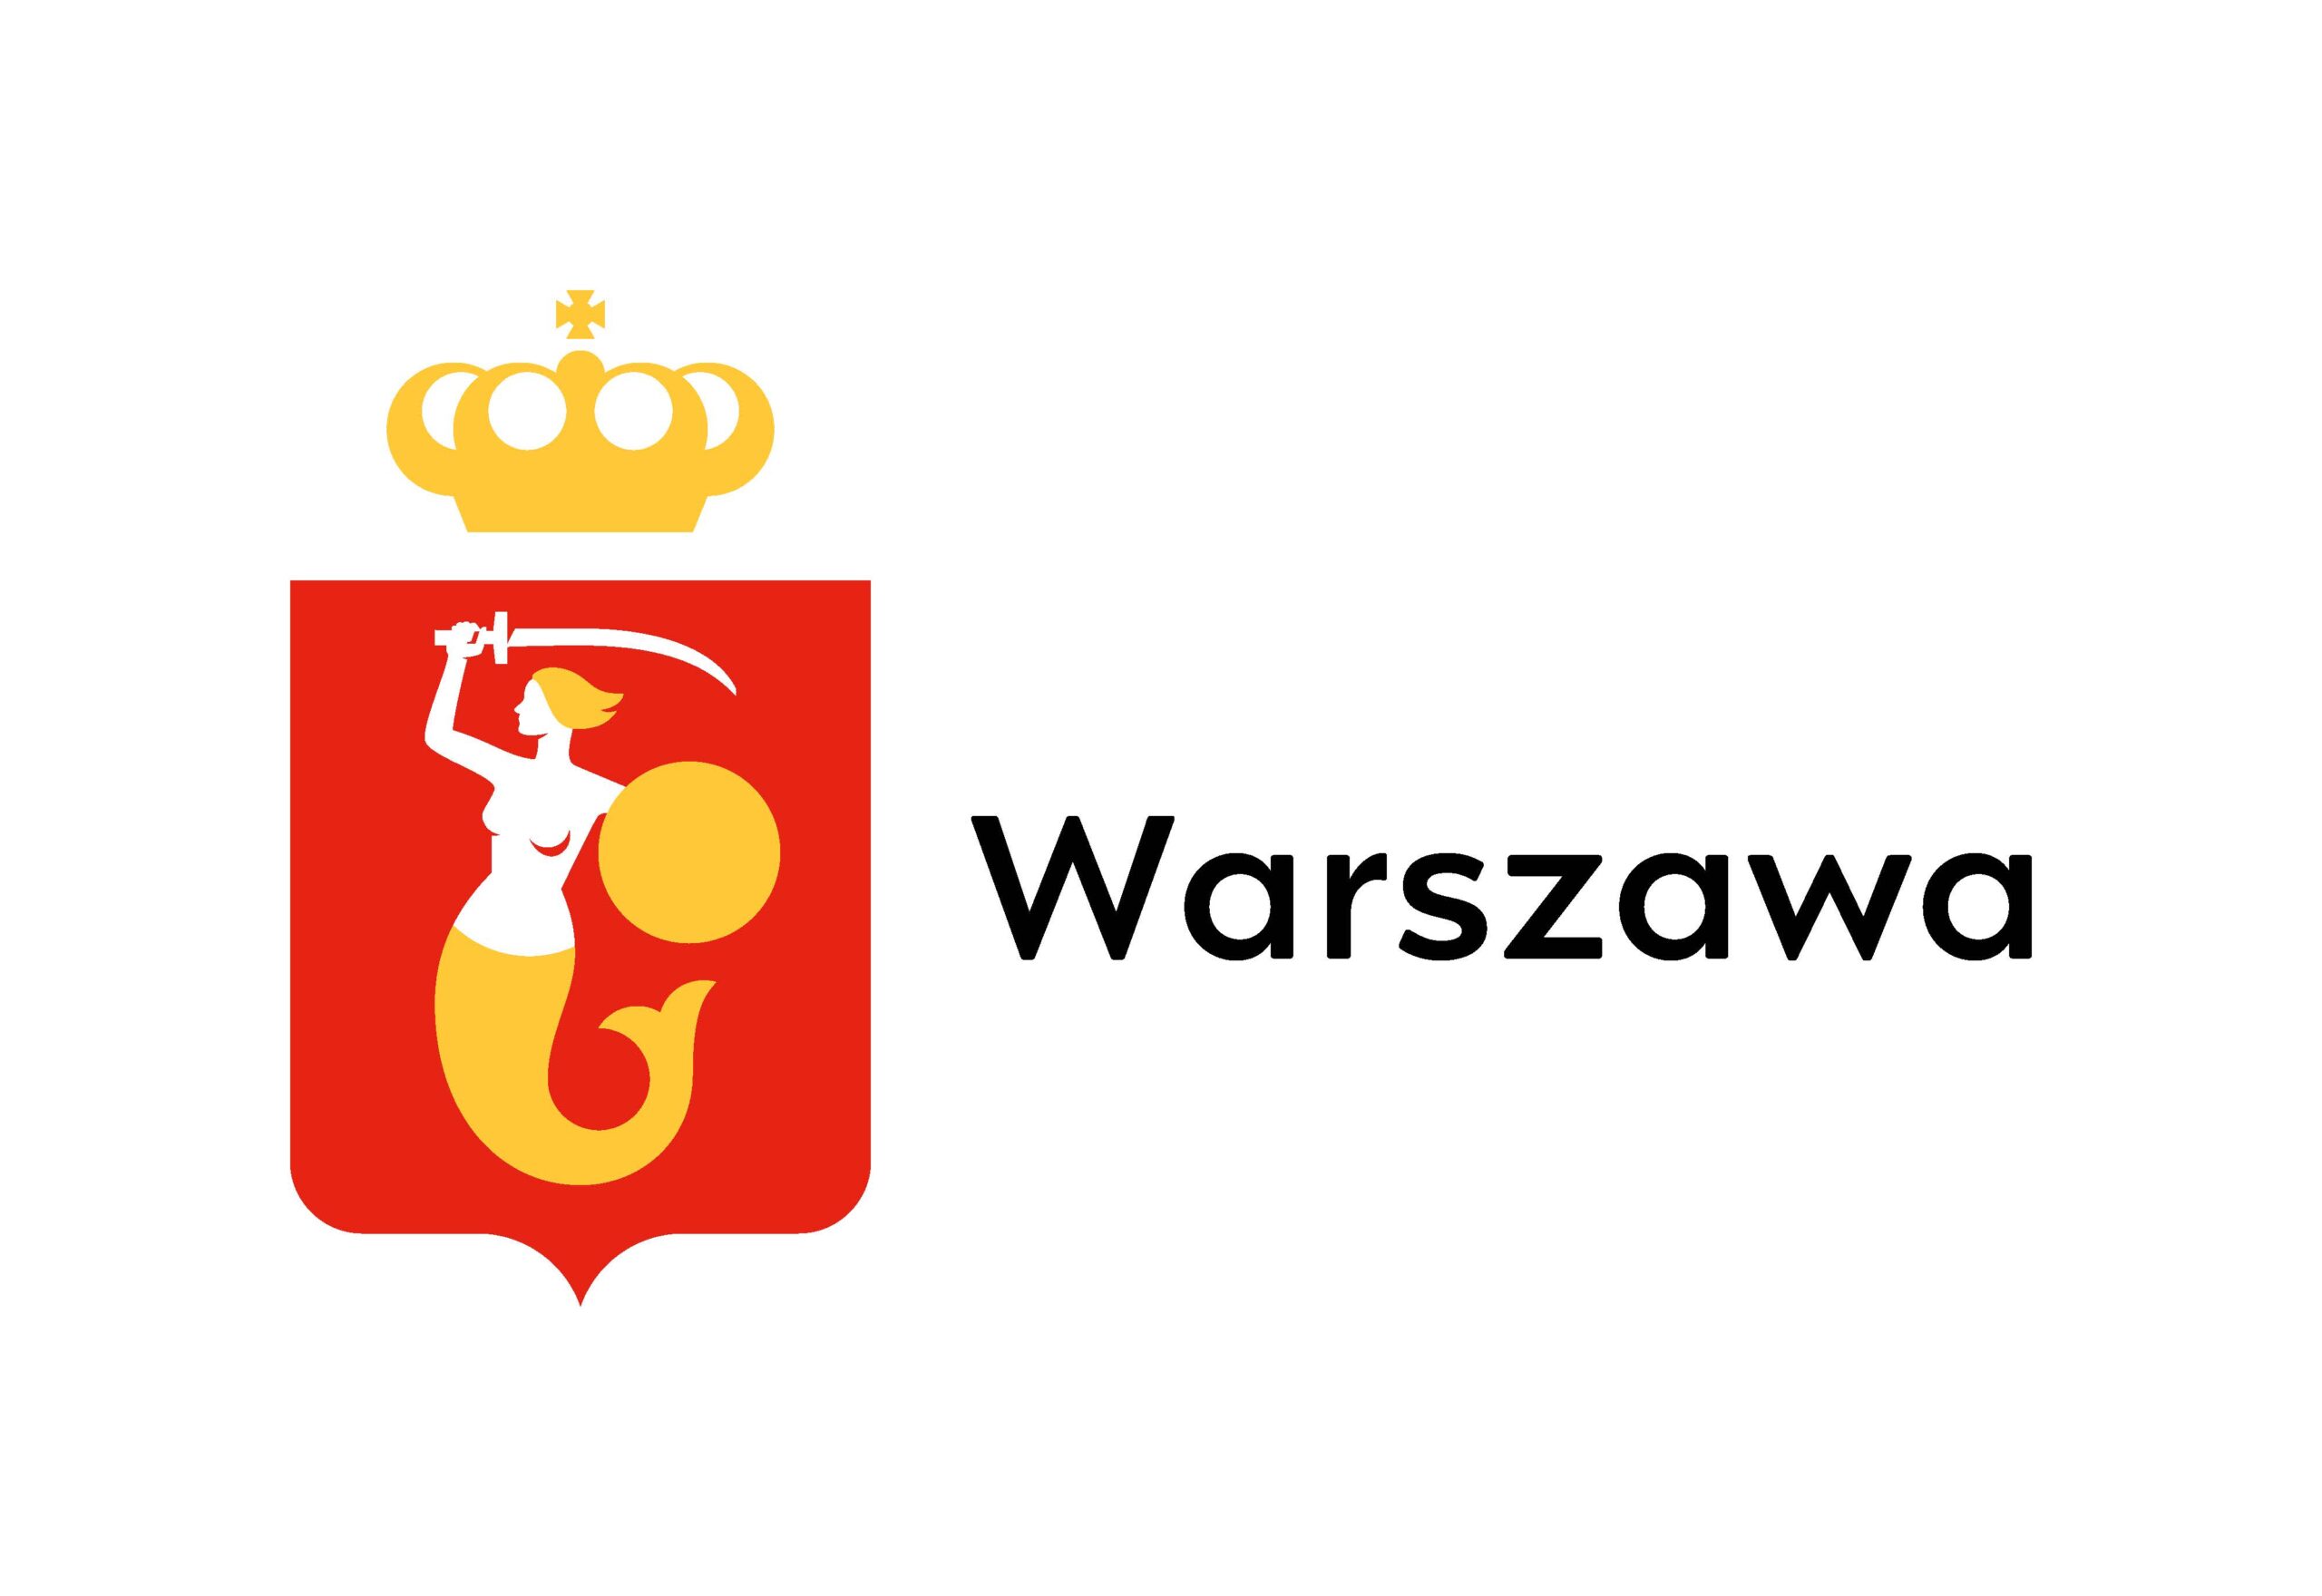 m.st. Warszawa